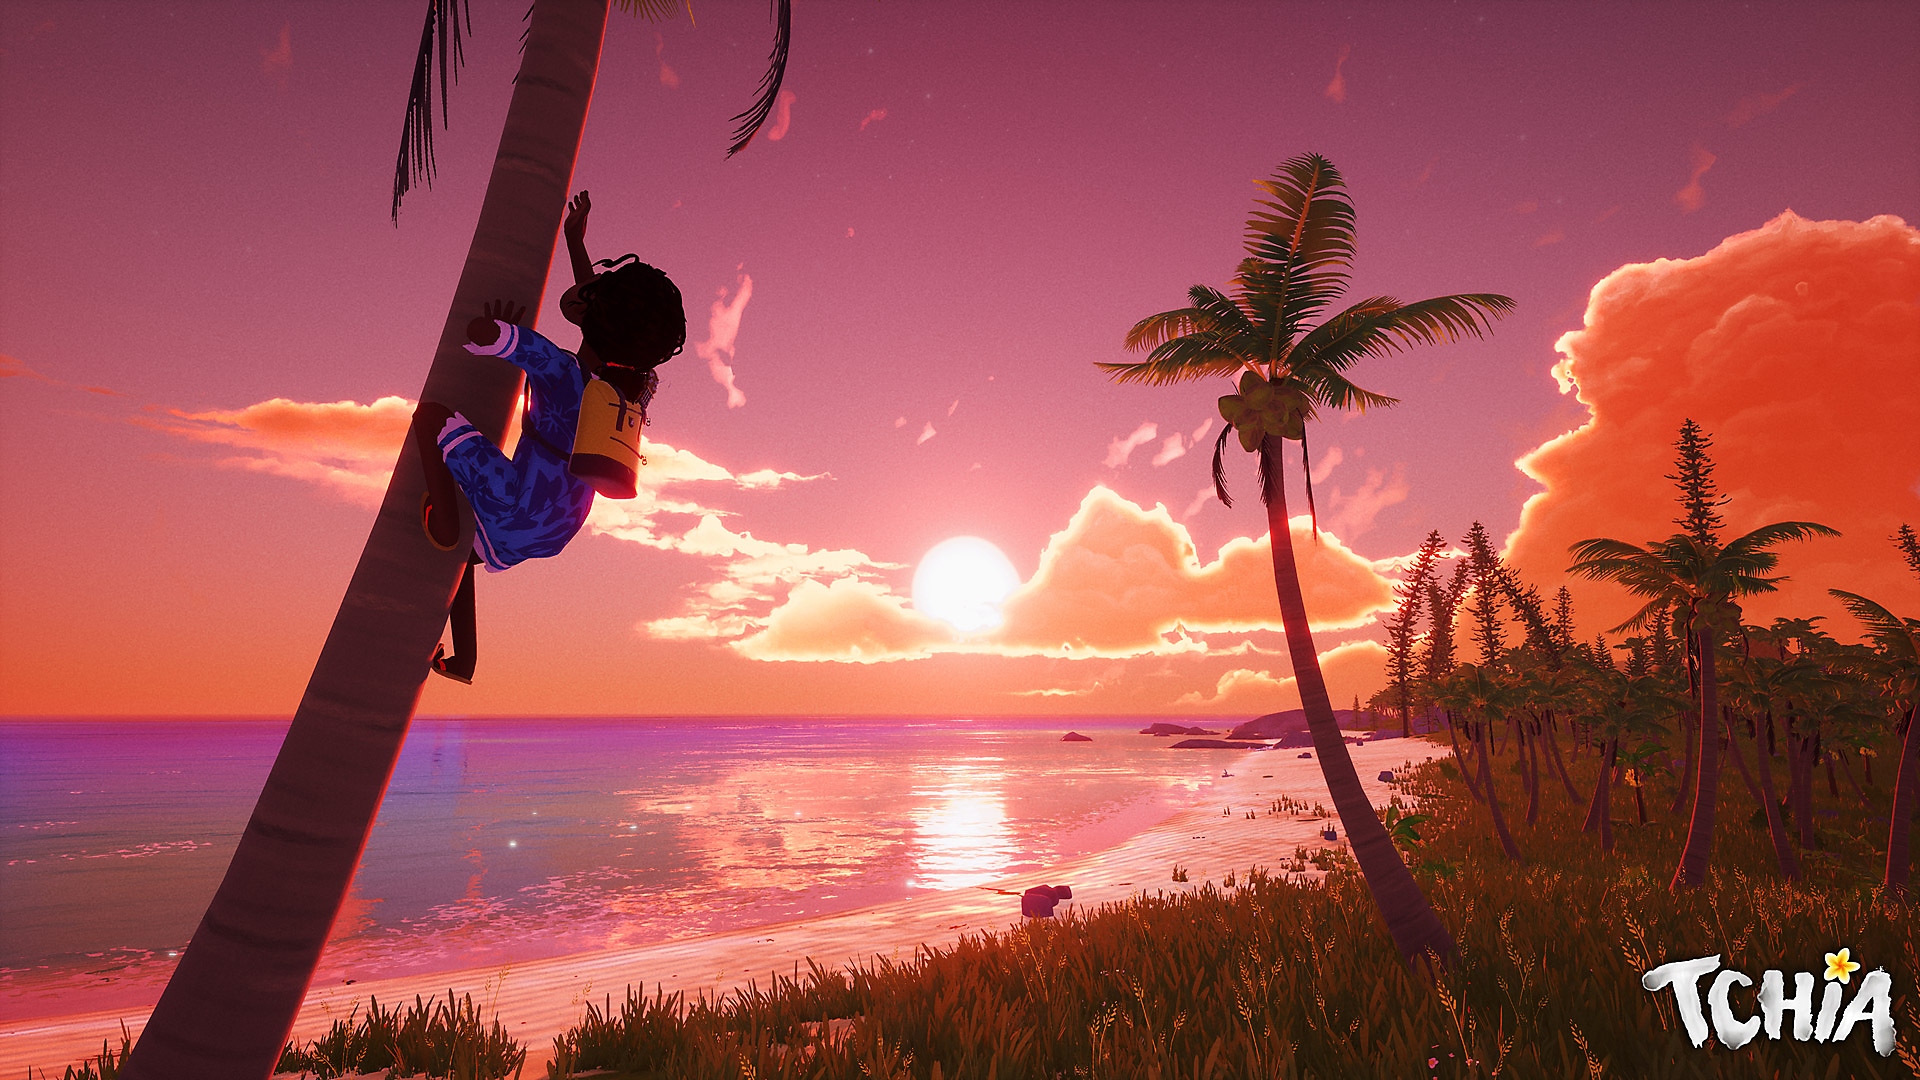 Capture d'écran de Tchia montrant le personnage principal qui grimpe à un arbre, sur fond de coucher de soleil